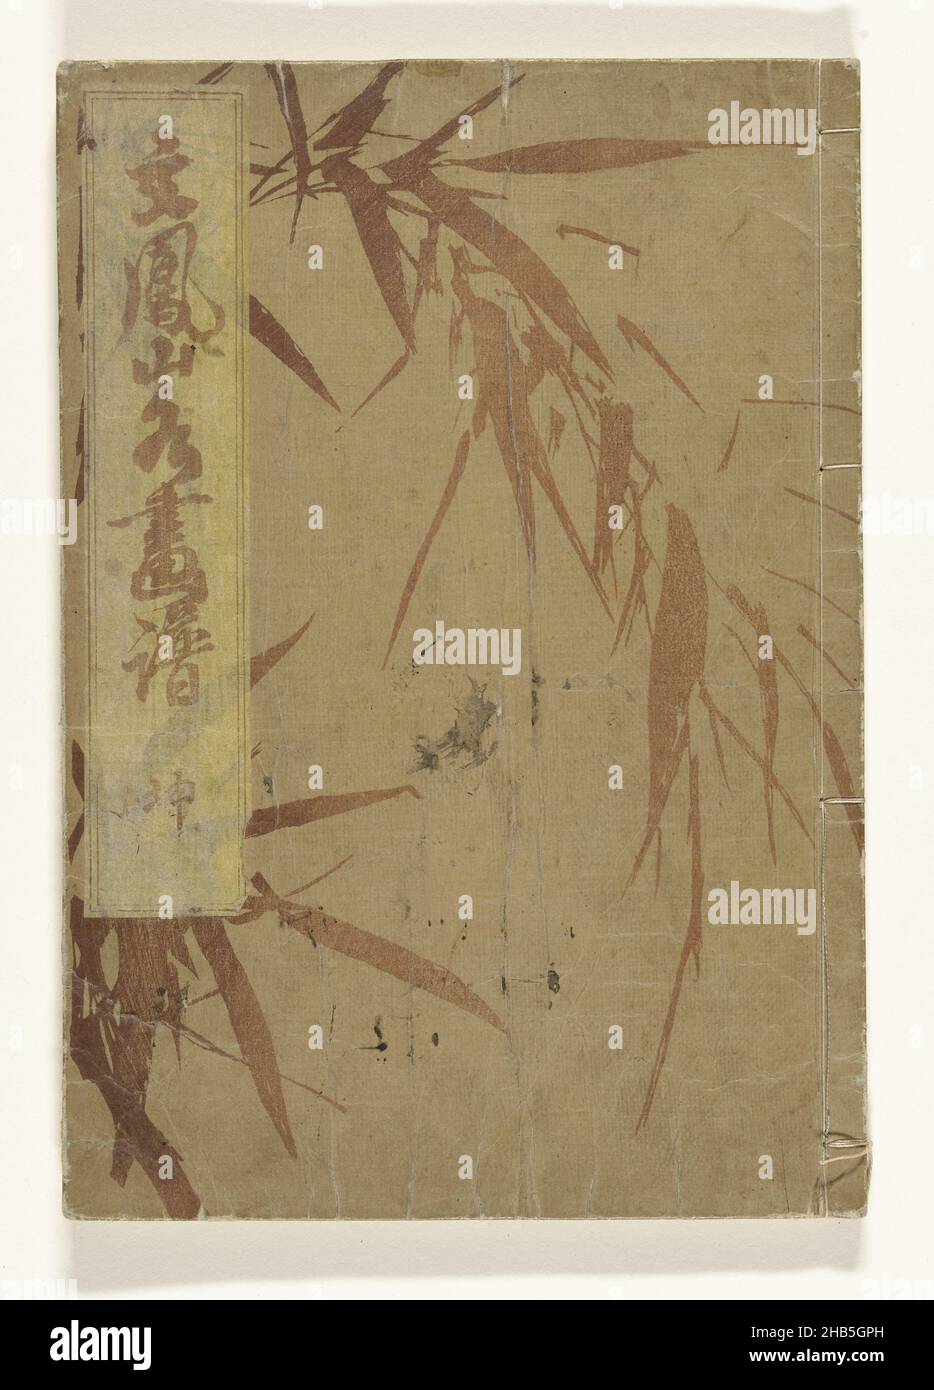 Paisajes de Bunpo, Bunpo sansui gafu (título sobre el objeto), un volumen (completo); cubierta marrón claro con patrón de bambú; tira amarilla superior izquierda del título; 17 hojas, numeradas: 16A, prefacio; 16b-31A, Paisajes; 31b, afterword; dos hojas y página de cubierta, anuncios para el editor., fabricante de la impresión: Kawamura Bunpo (mencionado en el objeto), editor: Yoshidaya Shinsei (mencionado en el objeto), fabricante de la impresión: Japón, editor: Kyoto, 1824, papel, corte en madera en color, altura 253 mm x anchura 175 mm Foto de stock